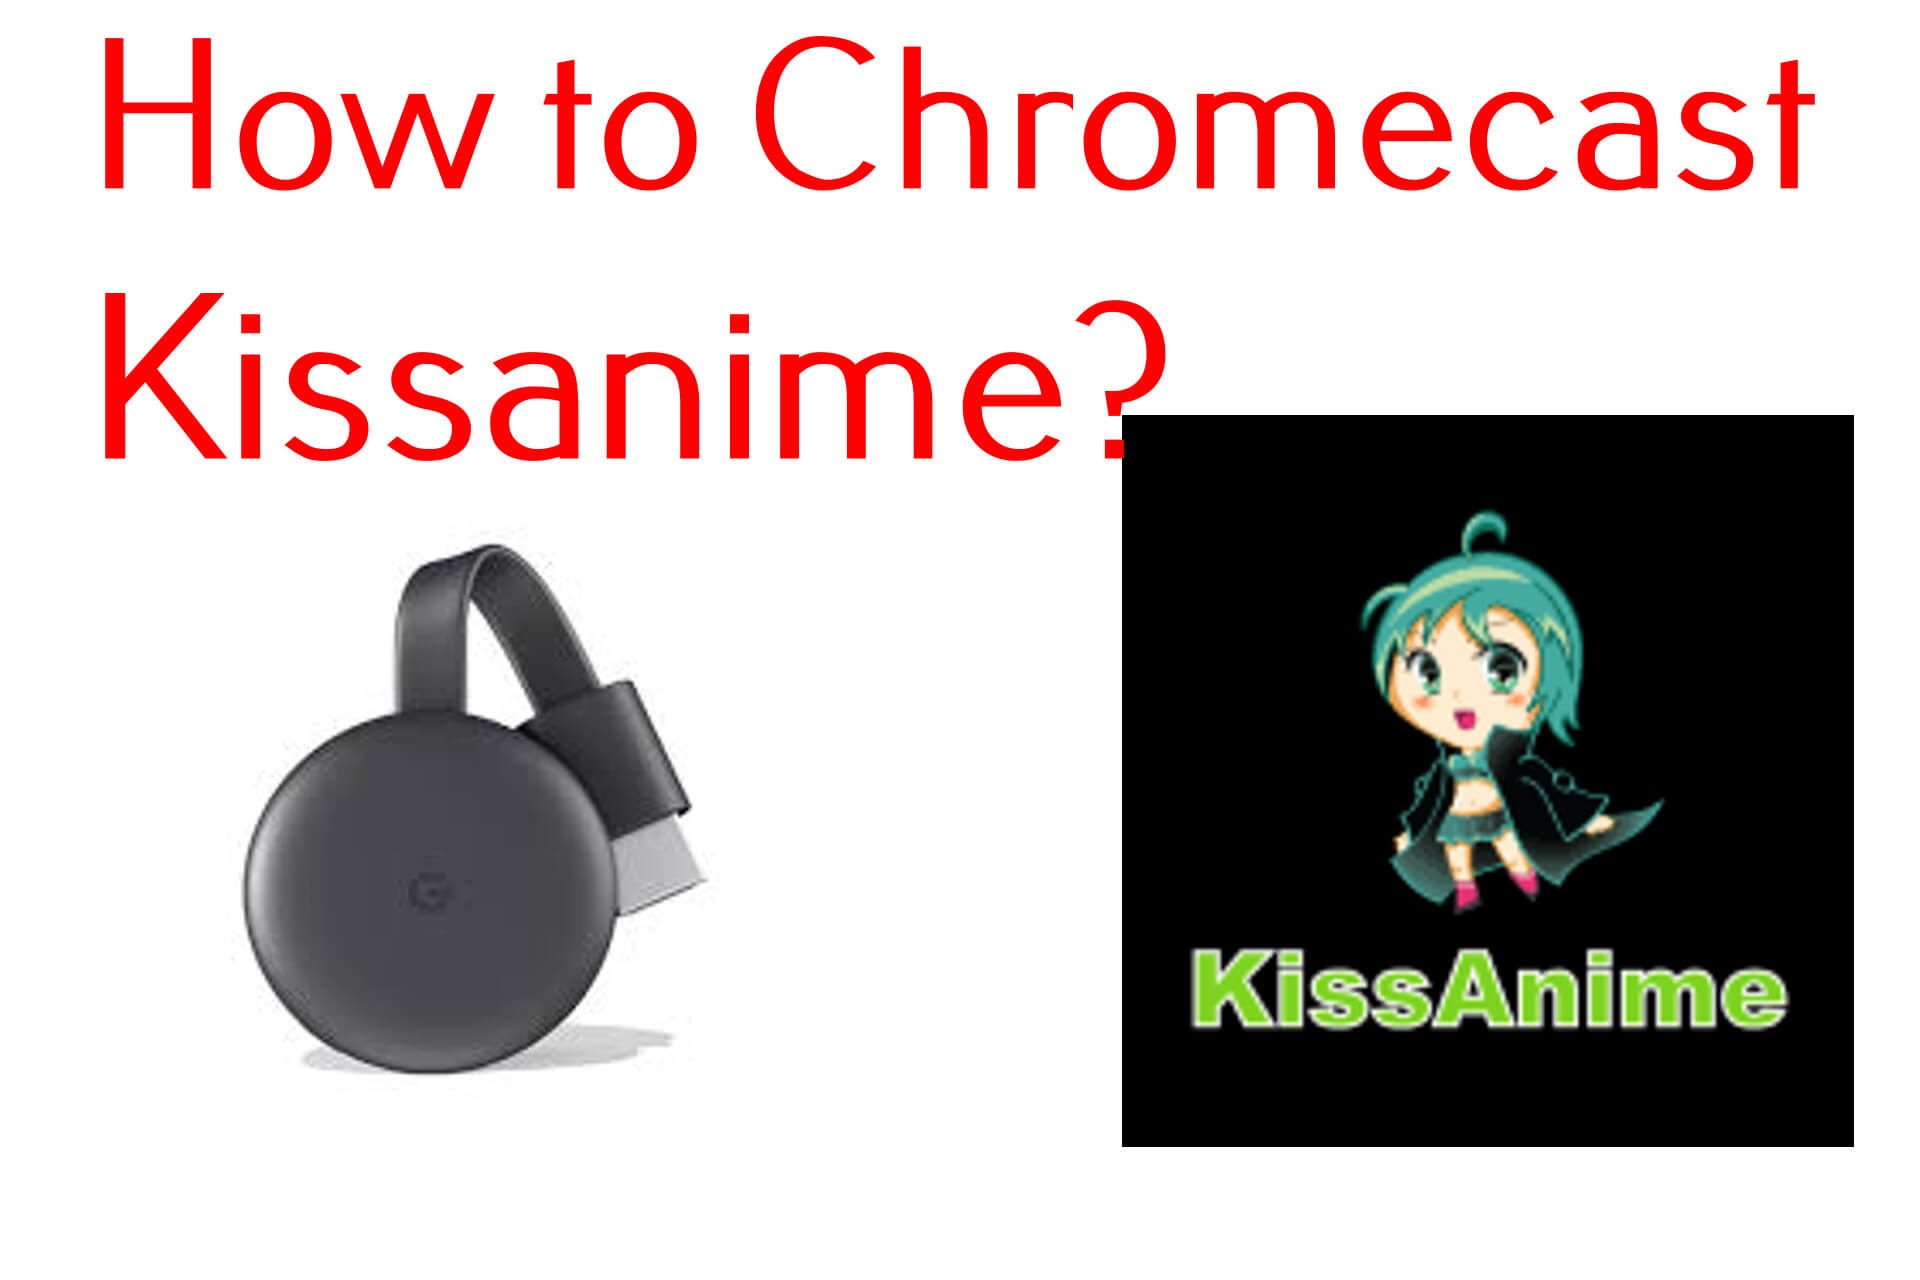 How to Cast Kissanime on Chromecast TV - Chromecast Apps Tips